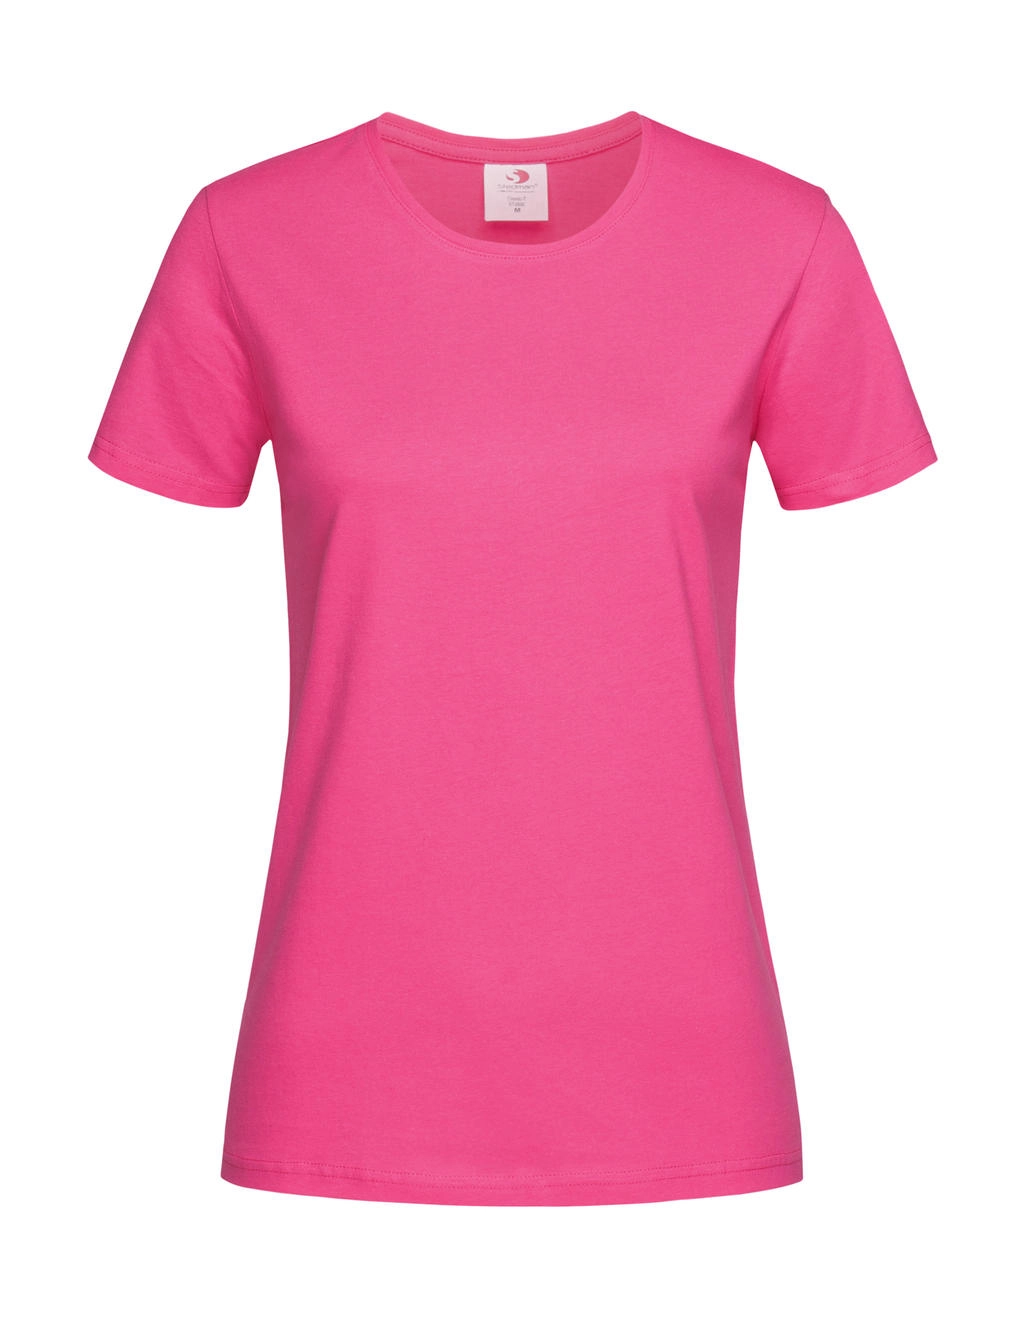 Classic-T Fitted Women zum Besticken und Bedrucken in der Farbe Sweet Pink mit Ihren Logo, Schriftzug oder Motiv.